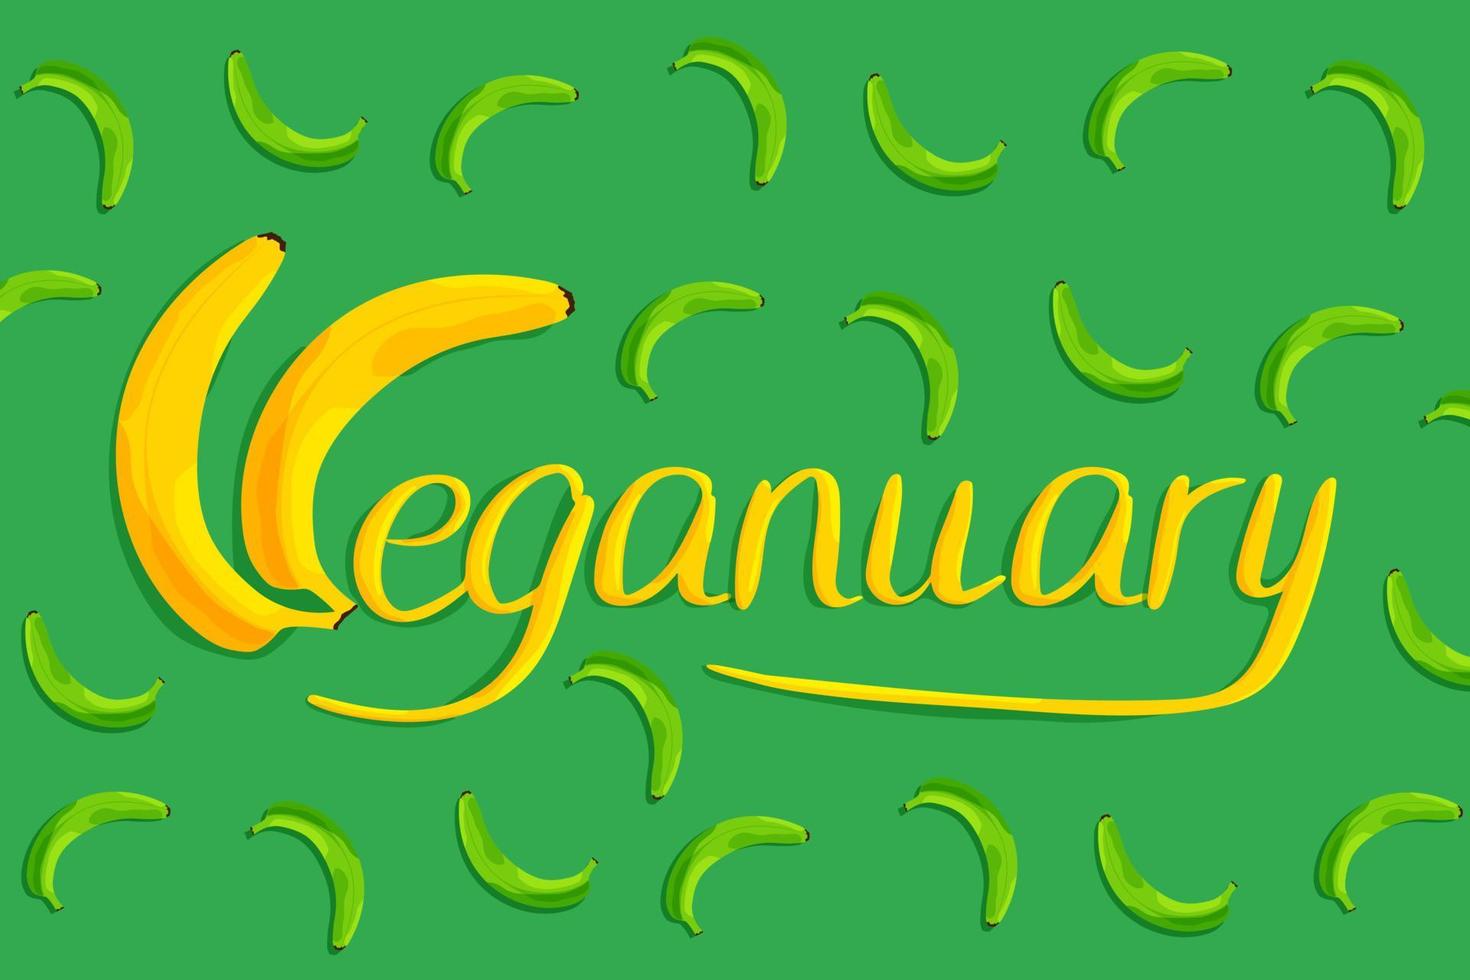 letras veganas desenhadas à mão em um fundo verde feito de bananas. ilustração vetorial em estilo simples vetor